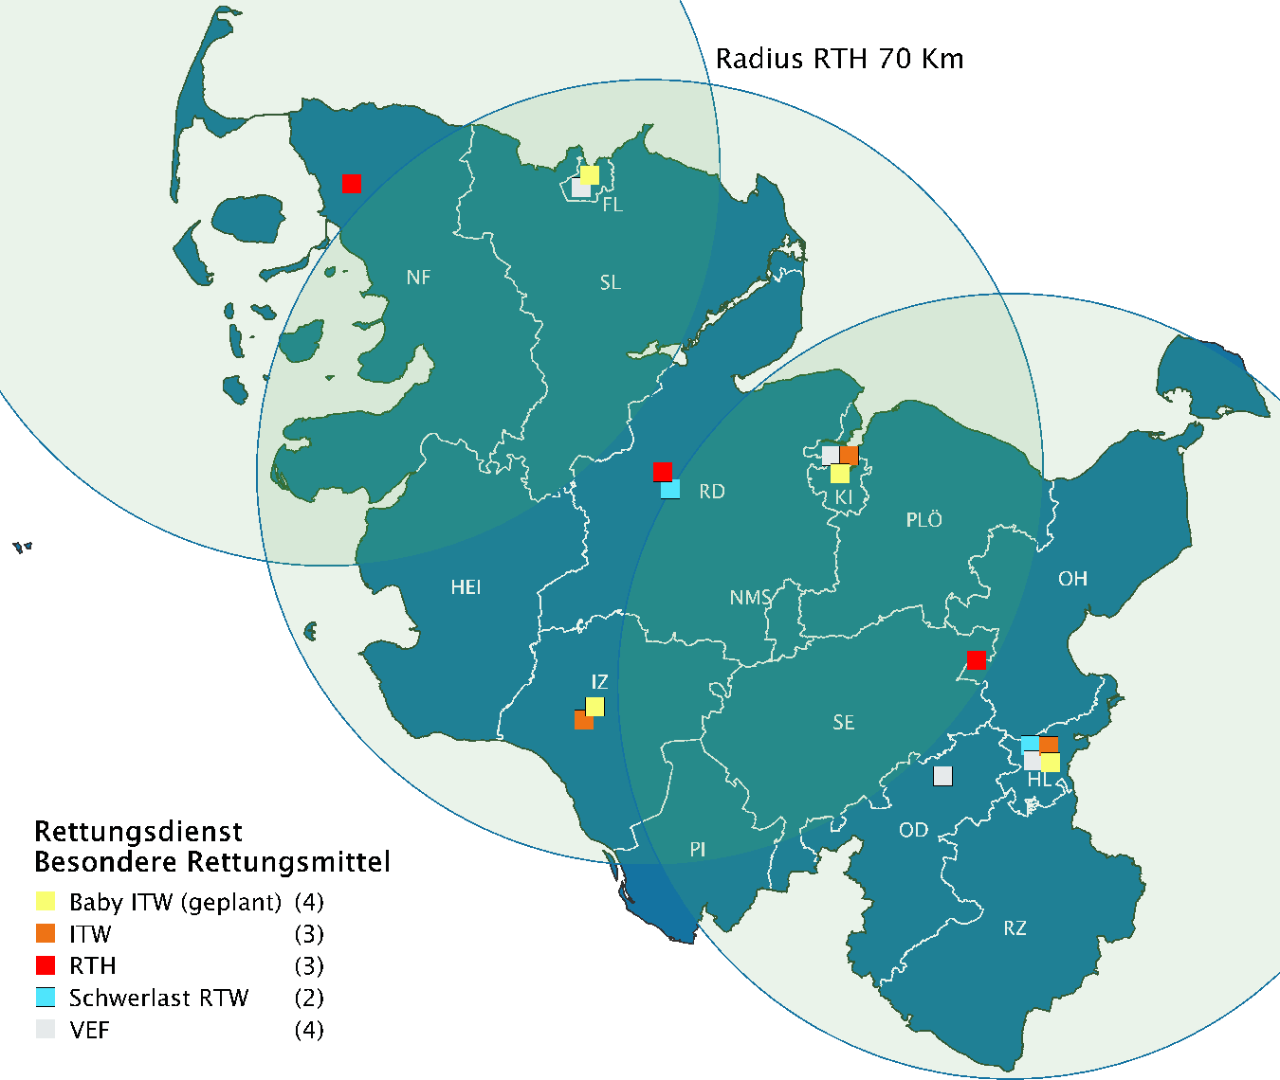 Landkarte von Schleswig-Holstein in blau, auf der die Standorte der besonderen Rettungsmittel und die Einsatzradien der Rettungshubschrauber farbig markiert sind